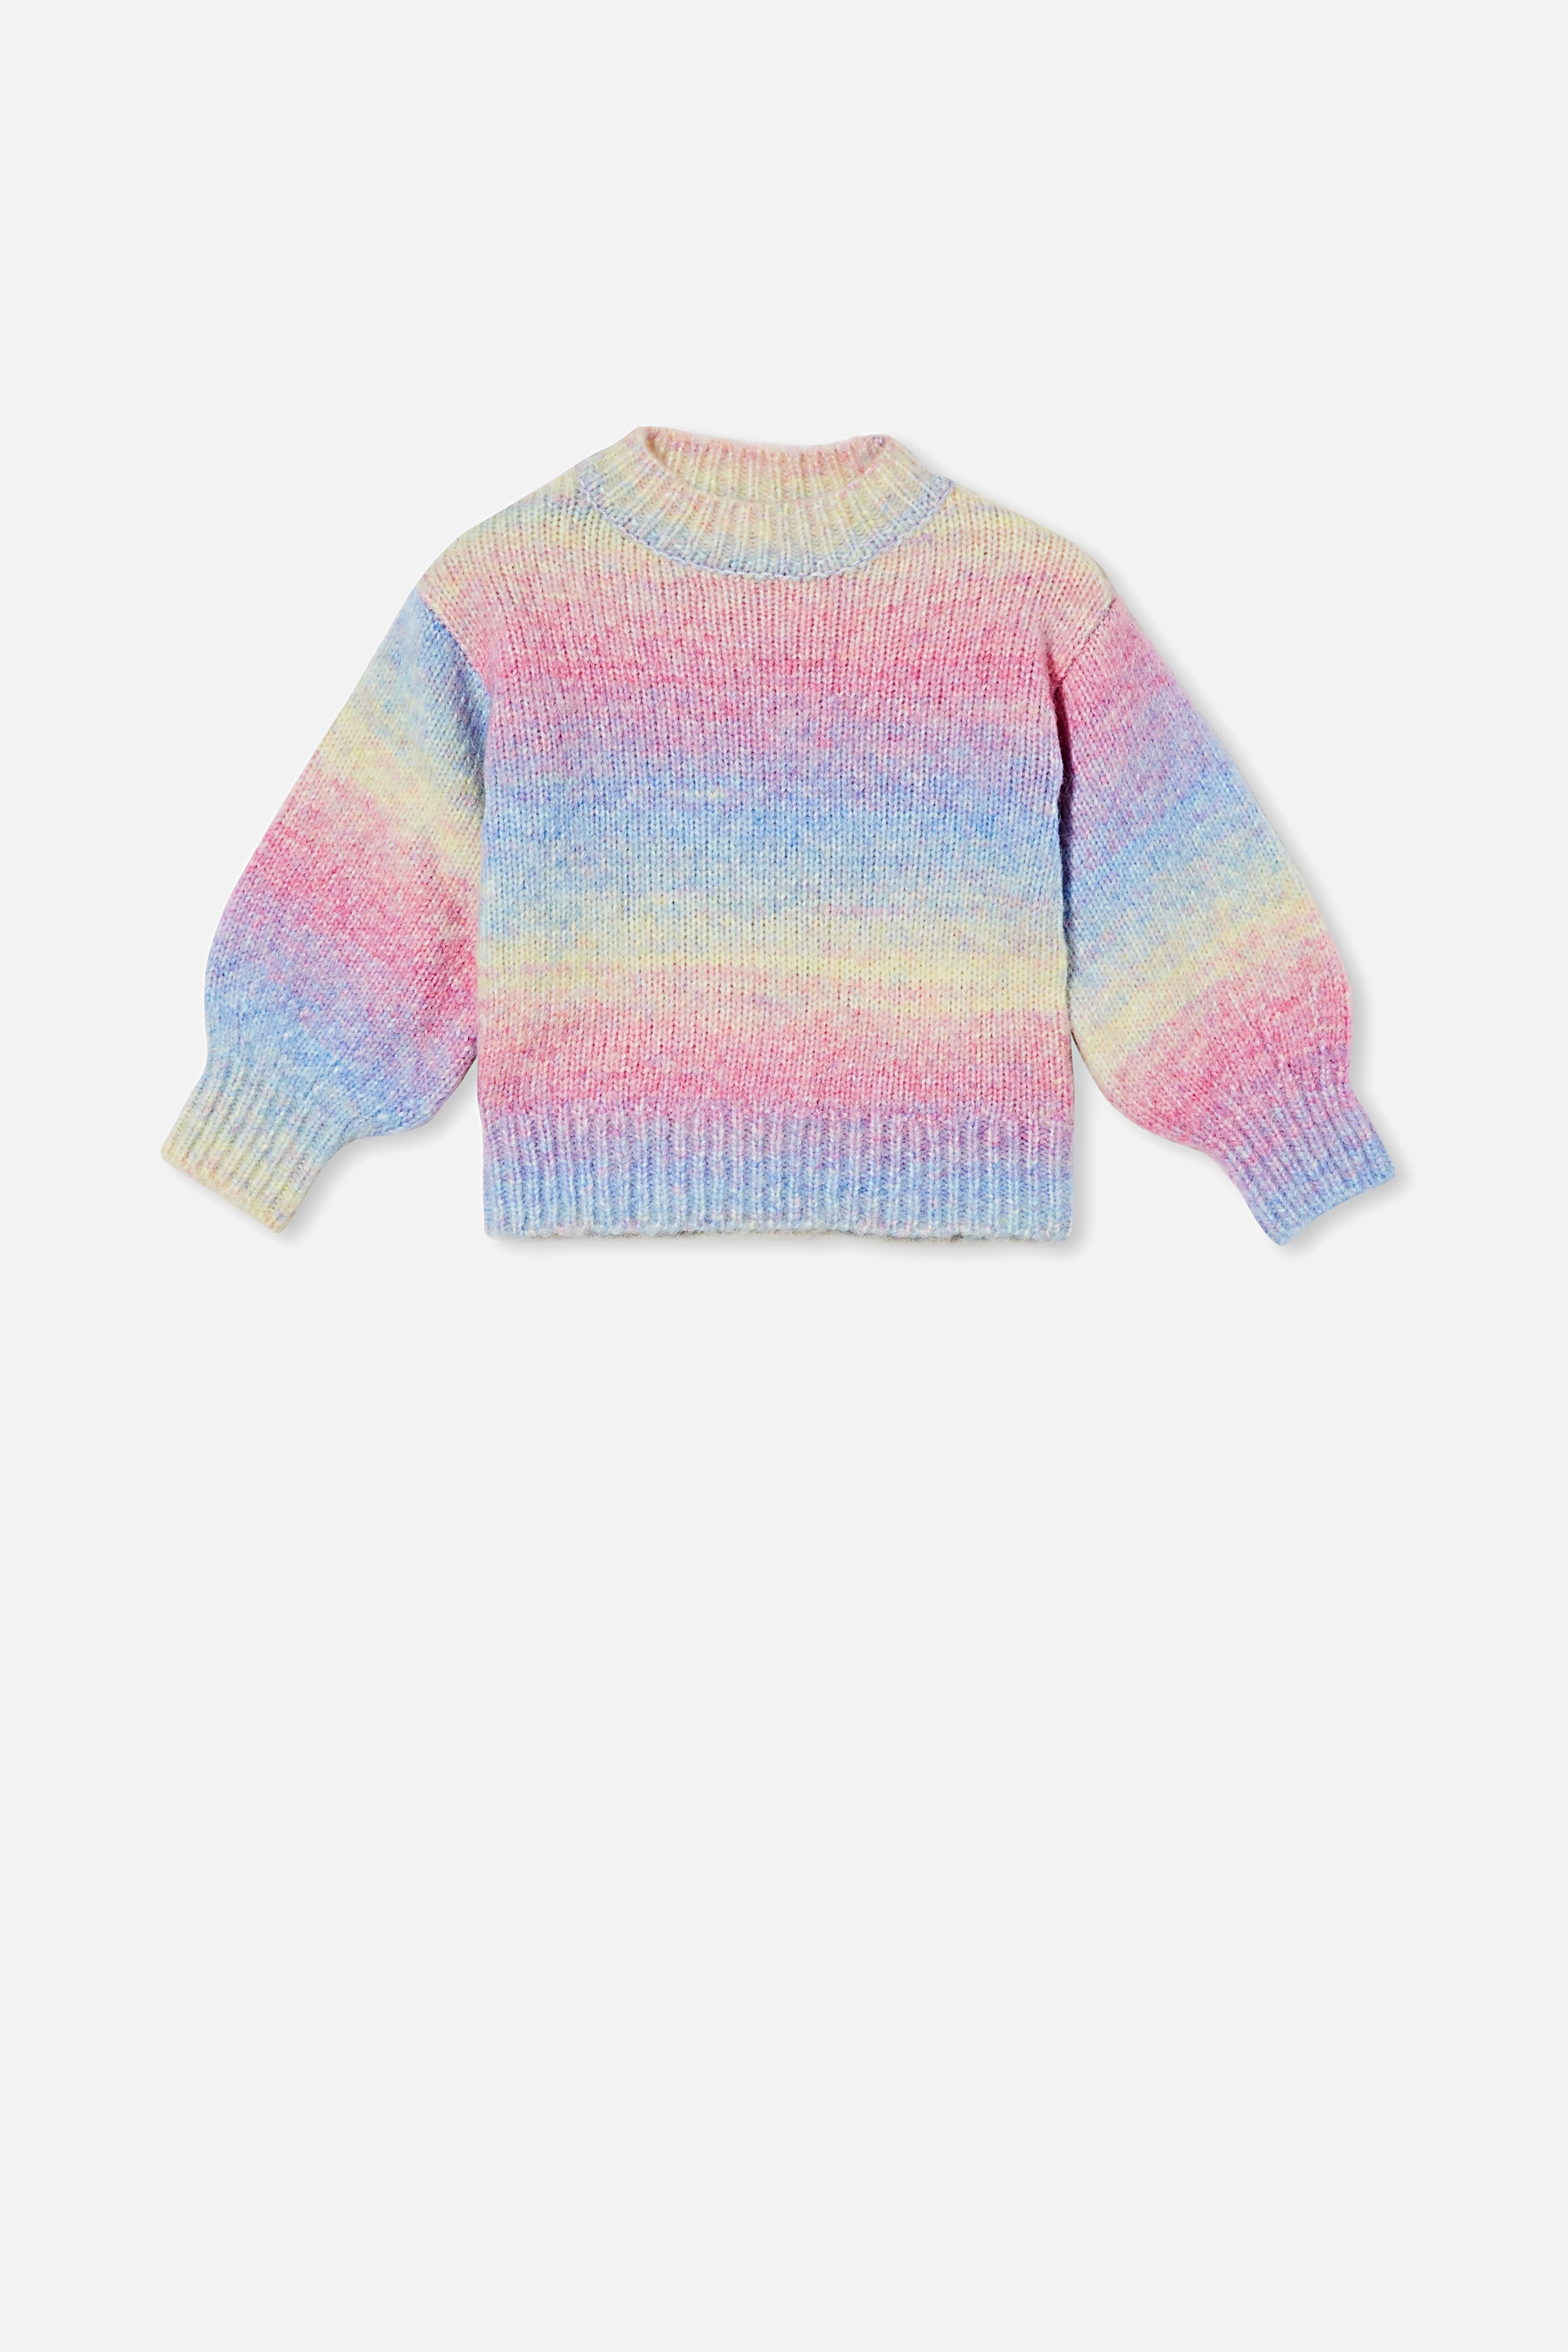 Cotton On Kids - Maisie Knit Jumper - Unicorn rainbow